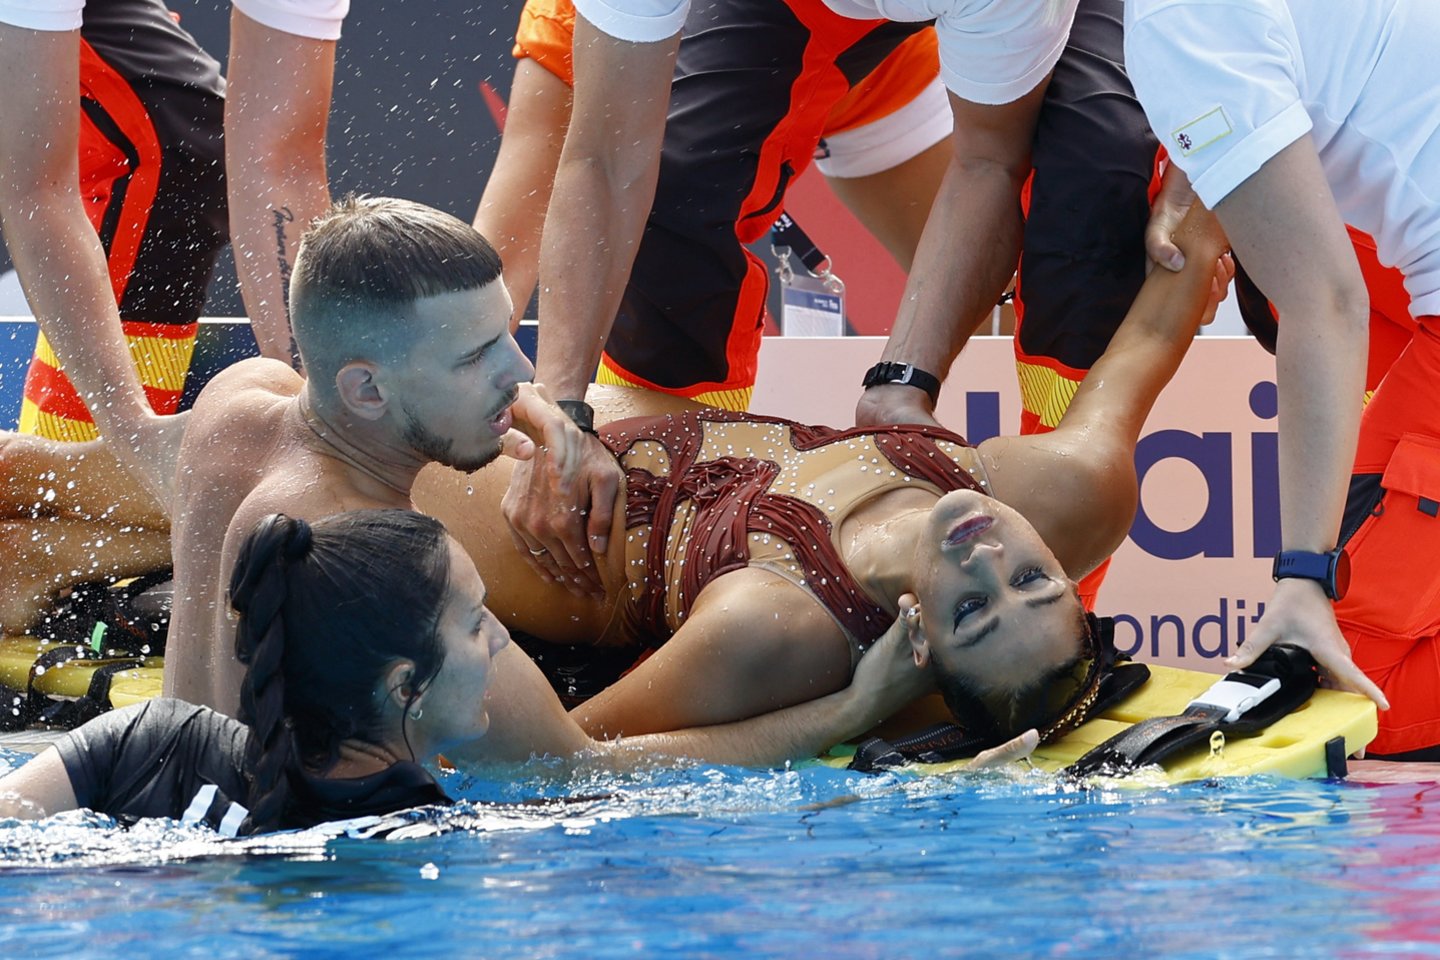  Vengrijoje tęsiasi plaukimo pasaulio čempionatas, kuriame trečiadienį vos neįvyko tragedija. Sinchroninio plaukimo laisvosios programos finale plaukusi amerikietė Anita Alvarez nualpo vandenyje. <br> Reuters/Scanpix nuotr.